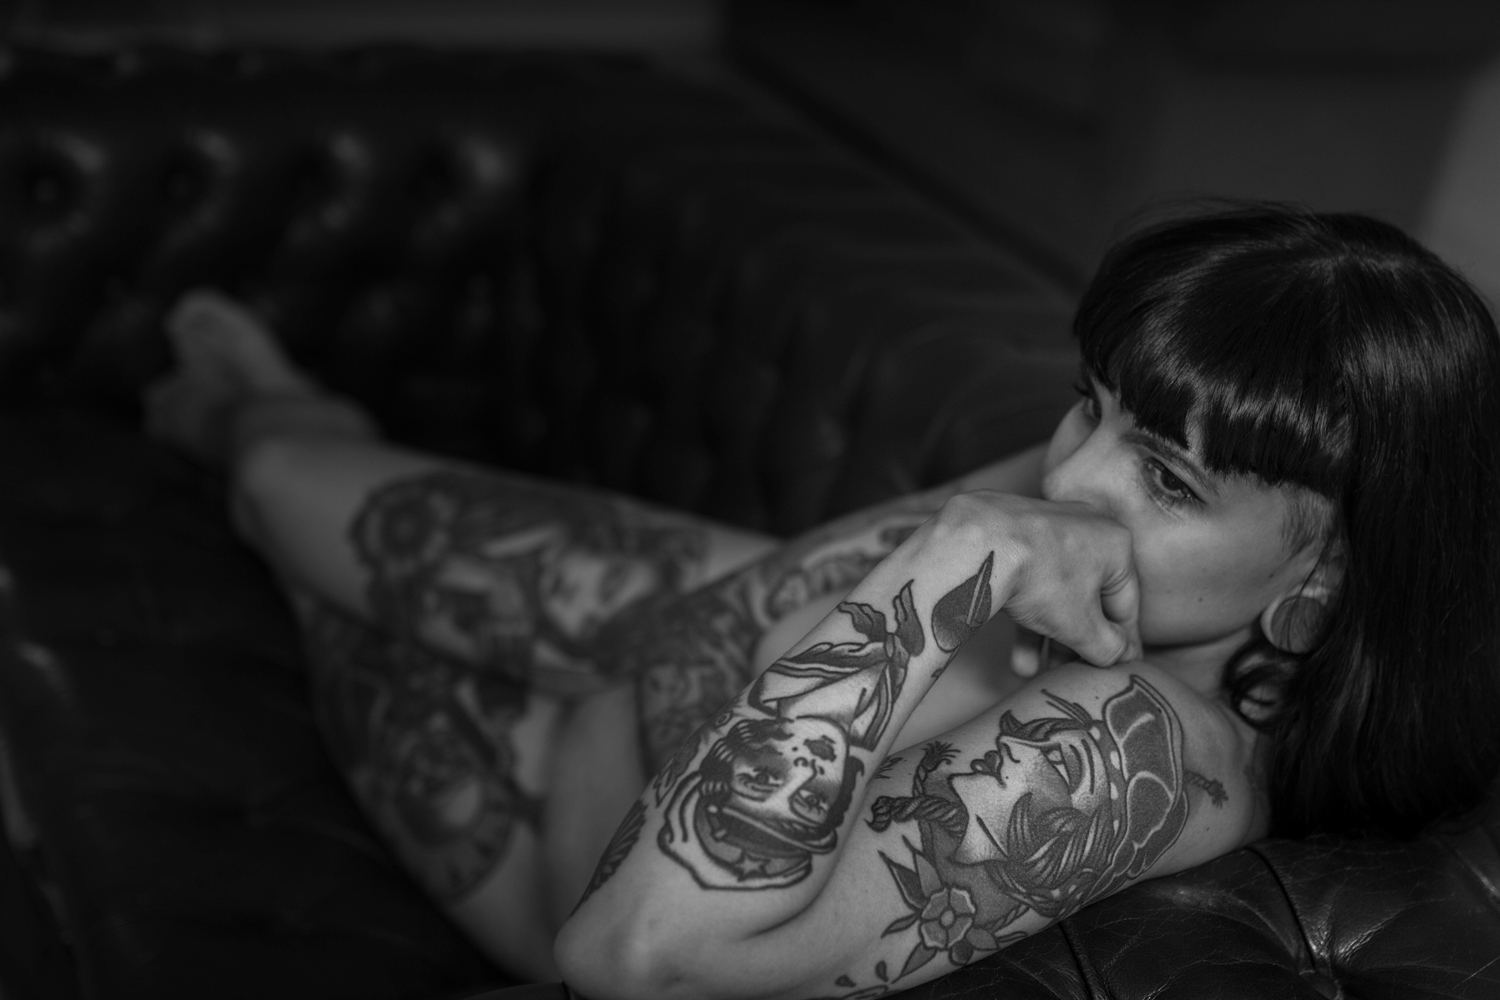 Blanco y negro, plano general. Modelo, tatuada y desnuda, recostada en un sofá en actitud pensativa.